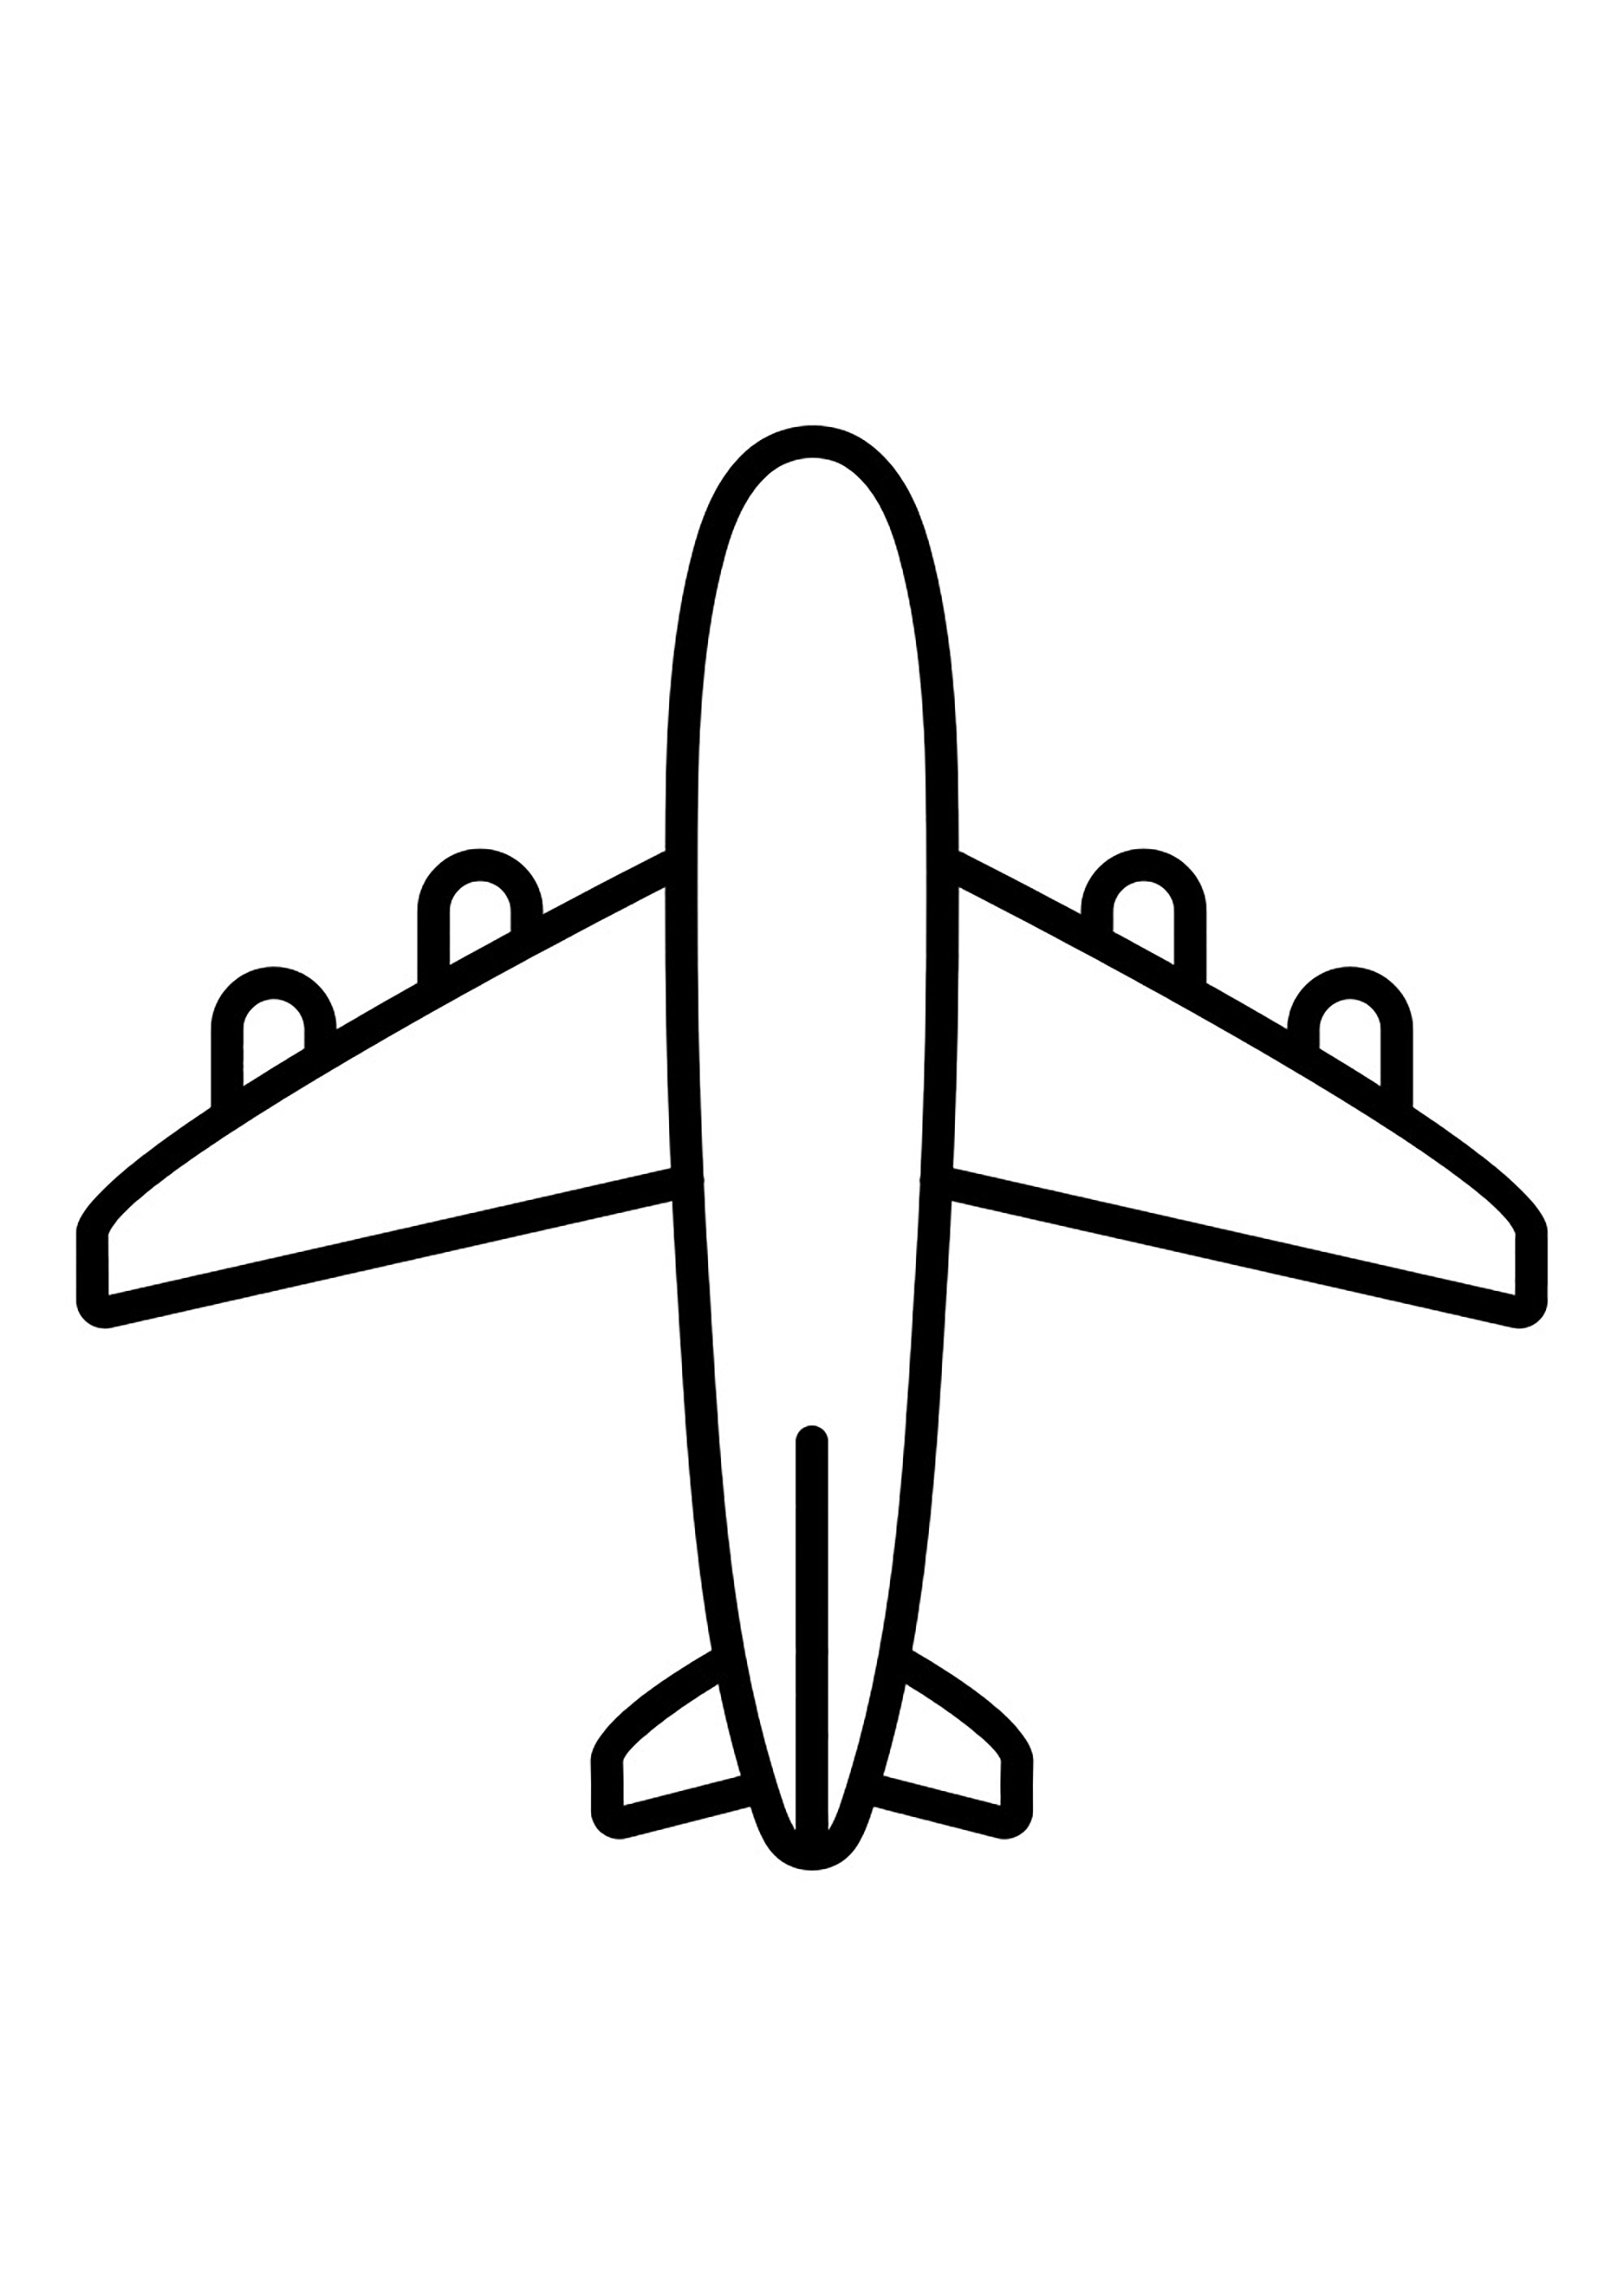 Dibujo muy sencillo de un avión con 4 motores